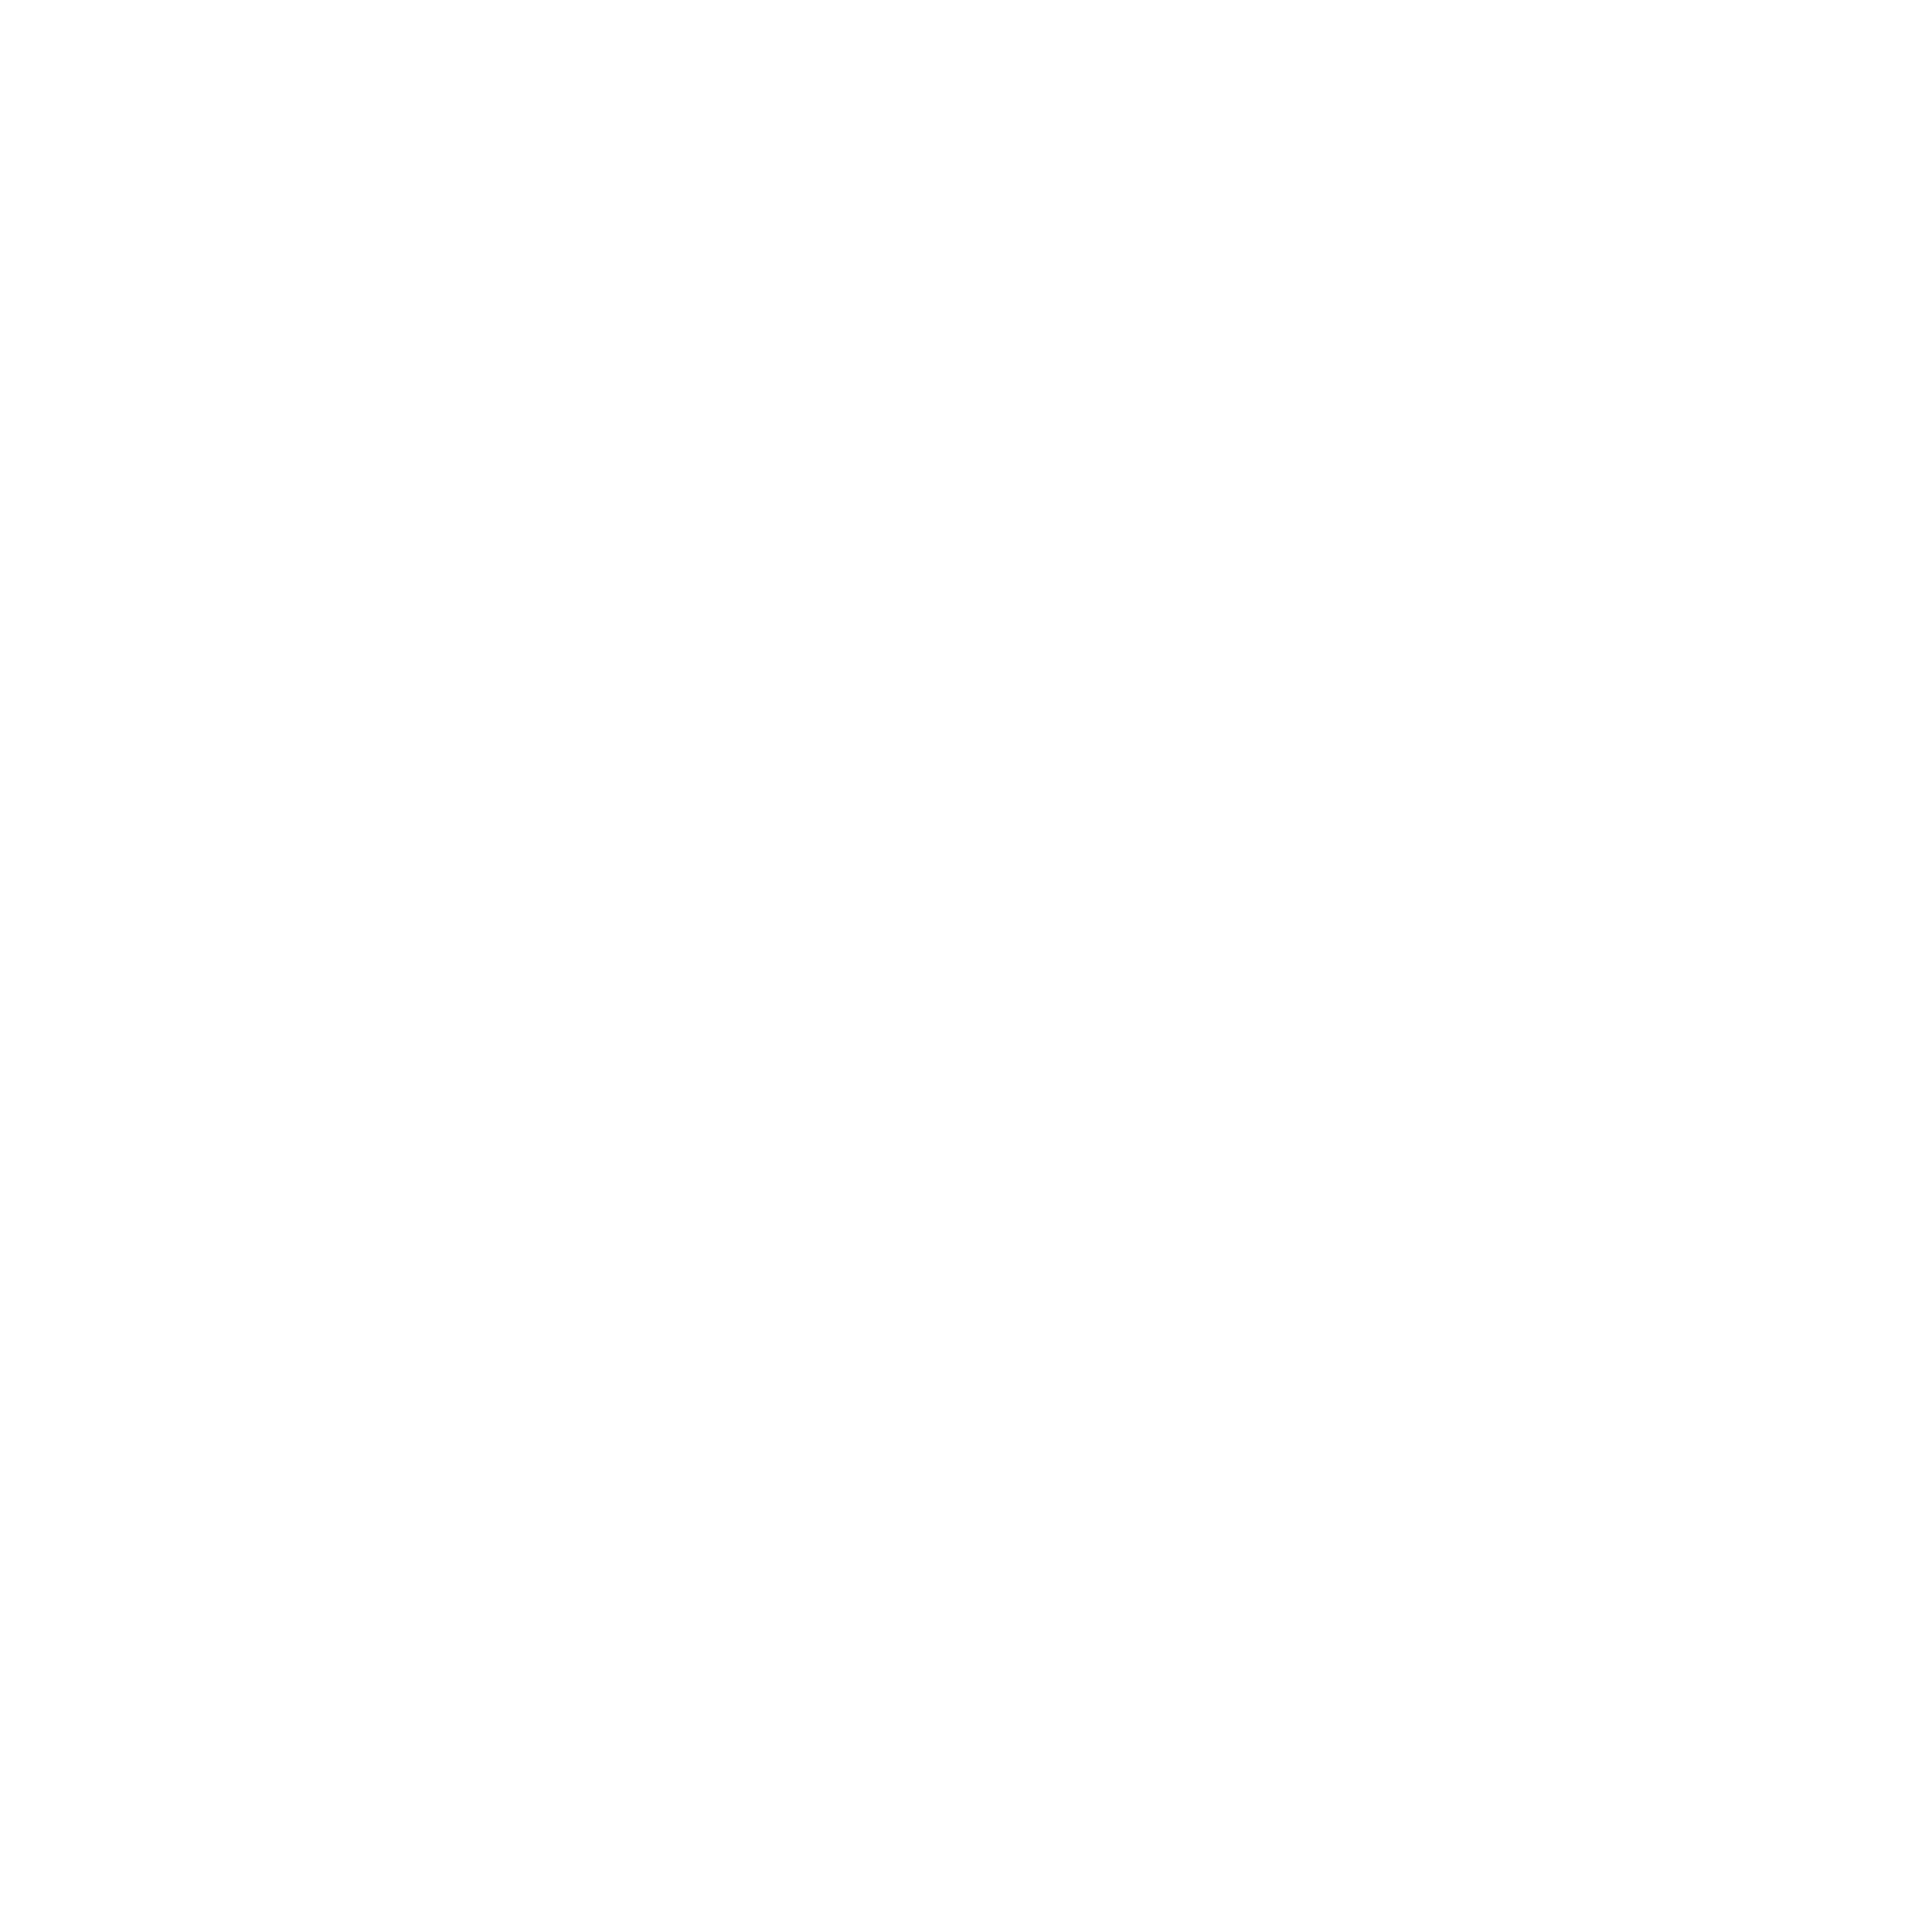 CongoStrategix-02